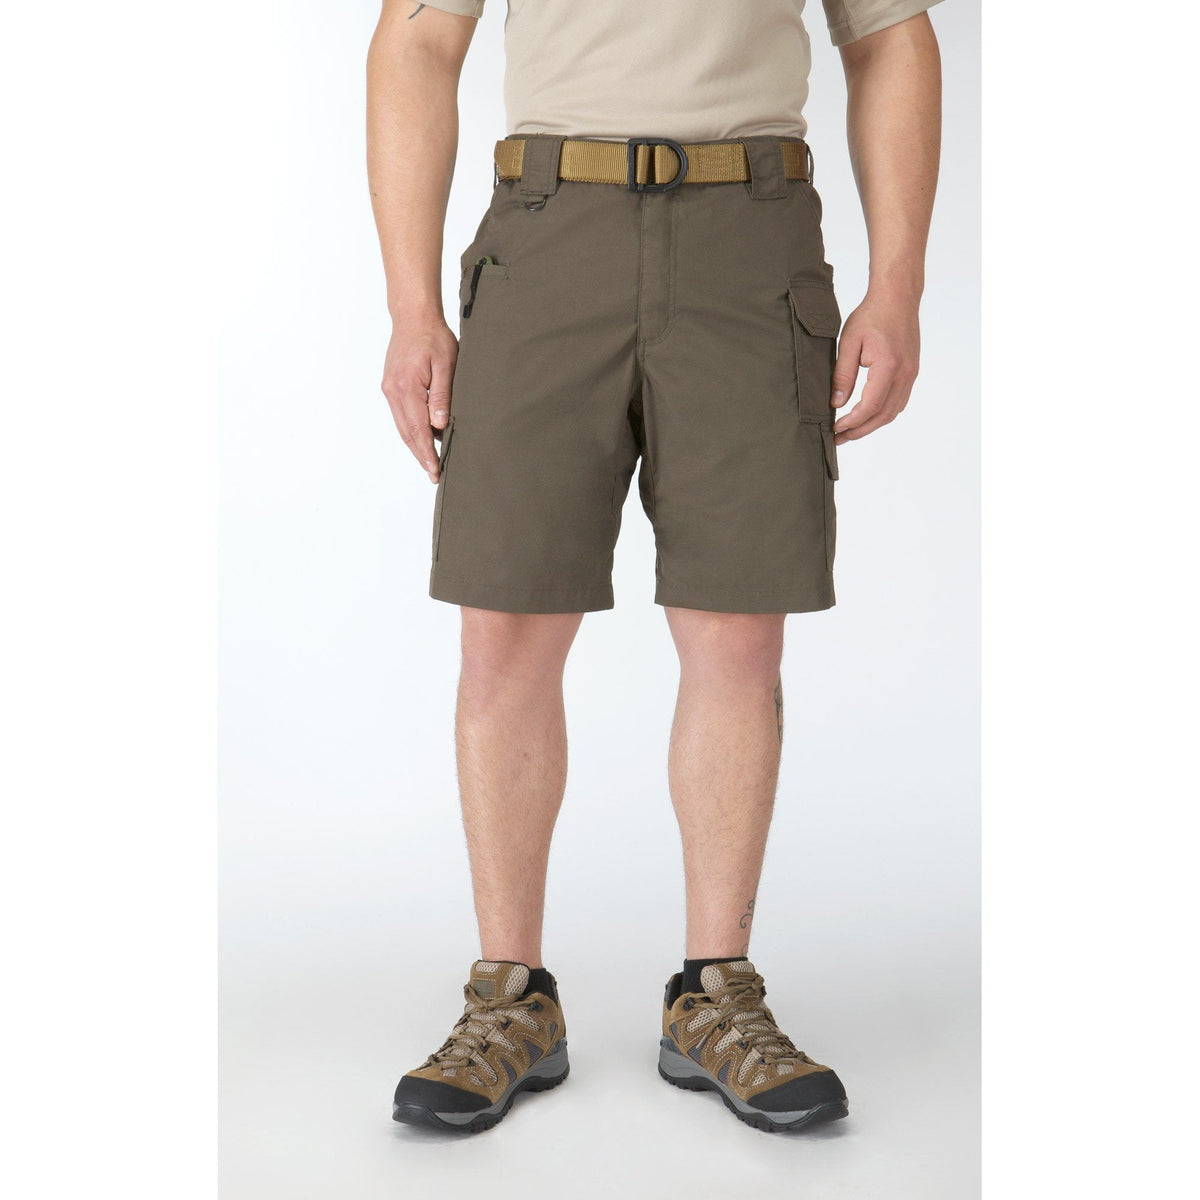 5.11 Taclite Pro Shorts Shorts 5.11 Tactical Tundra 28 Tactical Gear Supplier Tactical Distributors Australia